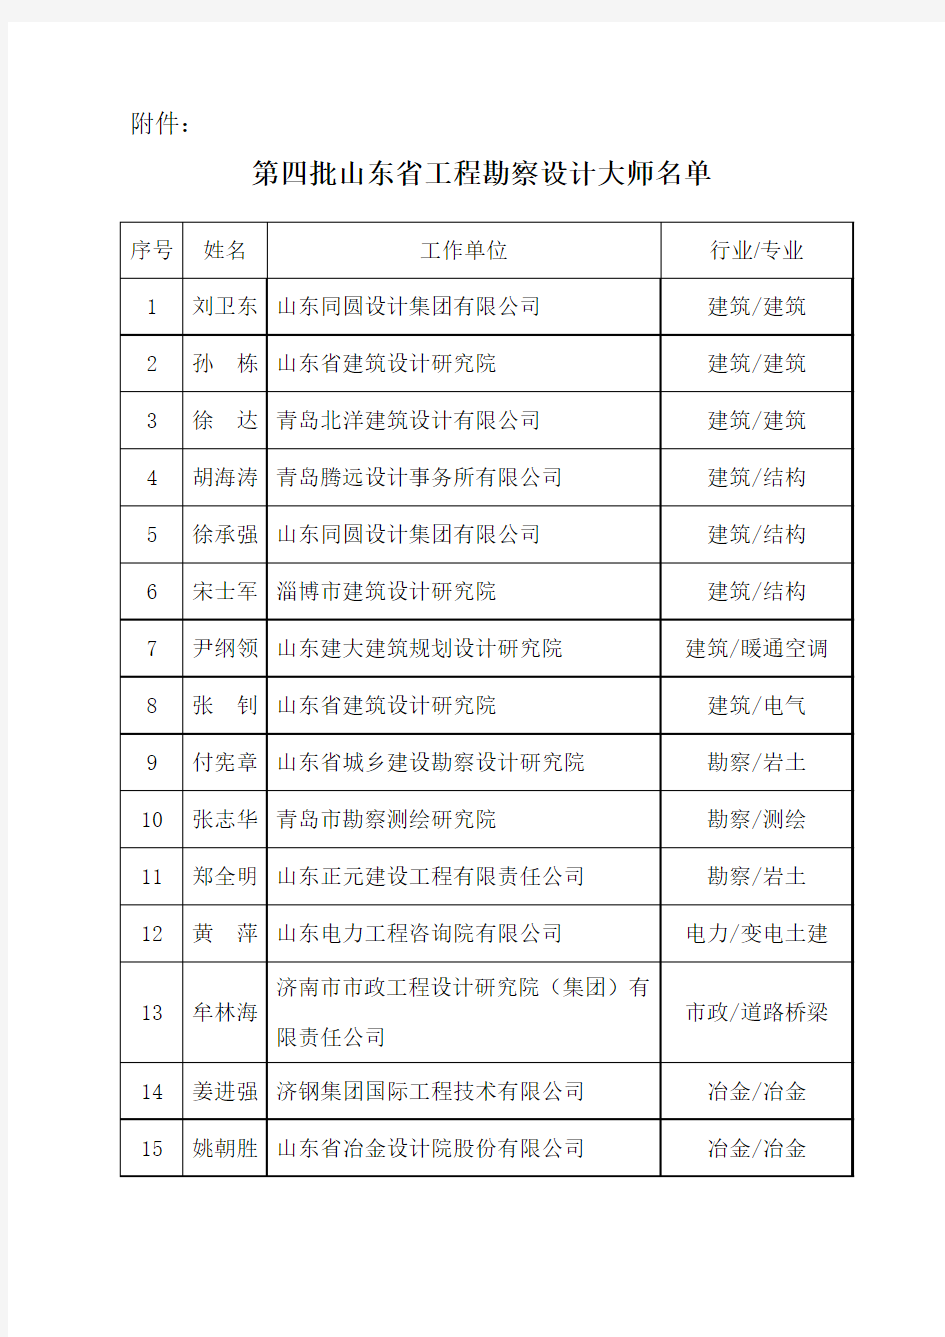 第四批山东省工程勘察设计大师名单